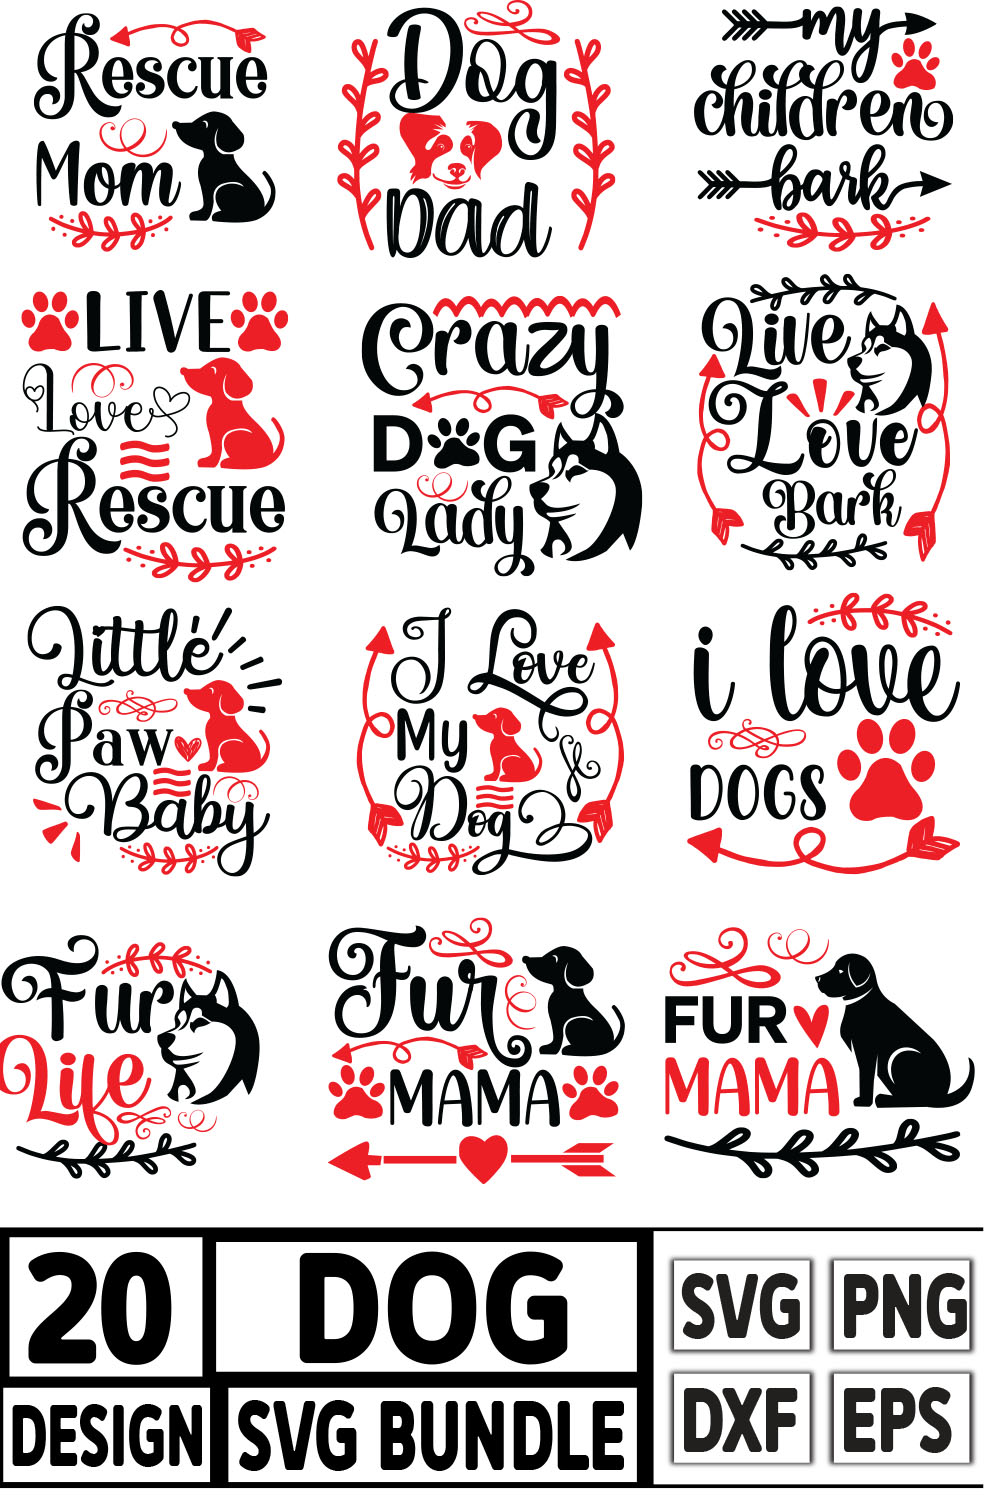 Dog SVG T-shirt Design Bundle pinterest image.